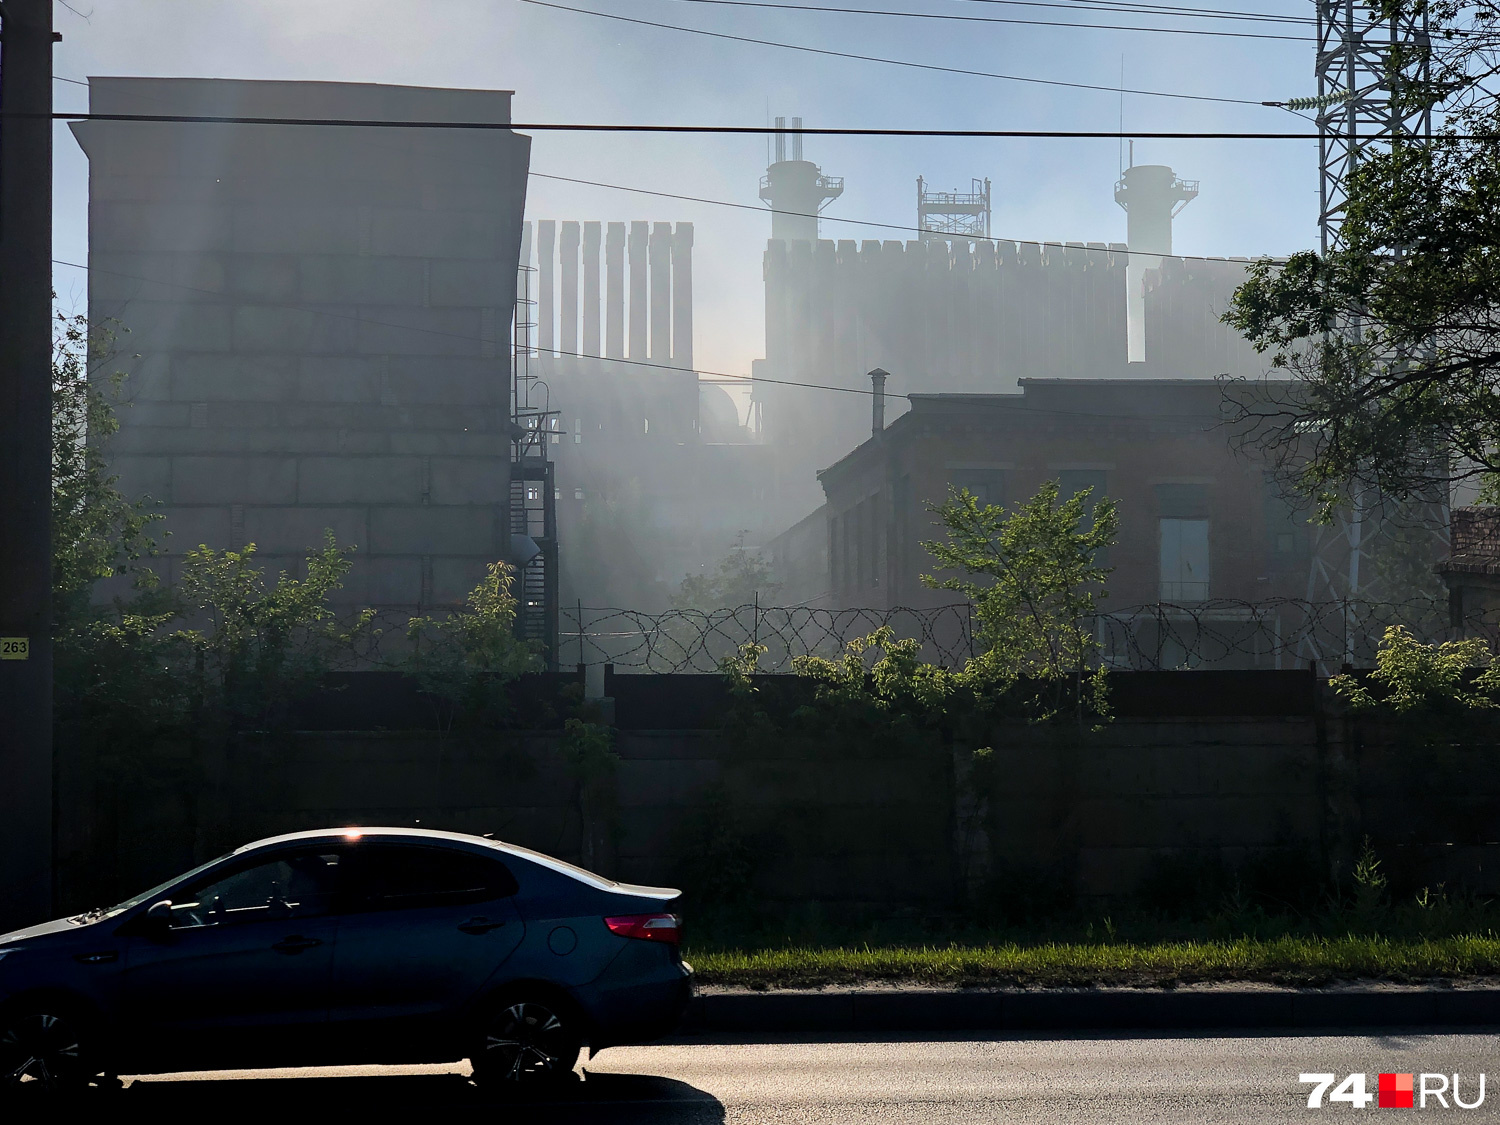 Ехал в Металлургический район мимо ферросплавного комбината (ЧЭМК) и остановился, чтобы зафиксировать это явление: то ли дым, то ли пыль, но воняет знатно. День, кстати, солнечный был, хотя по фотографии не скажешь